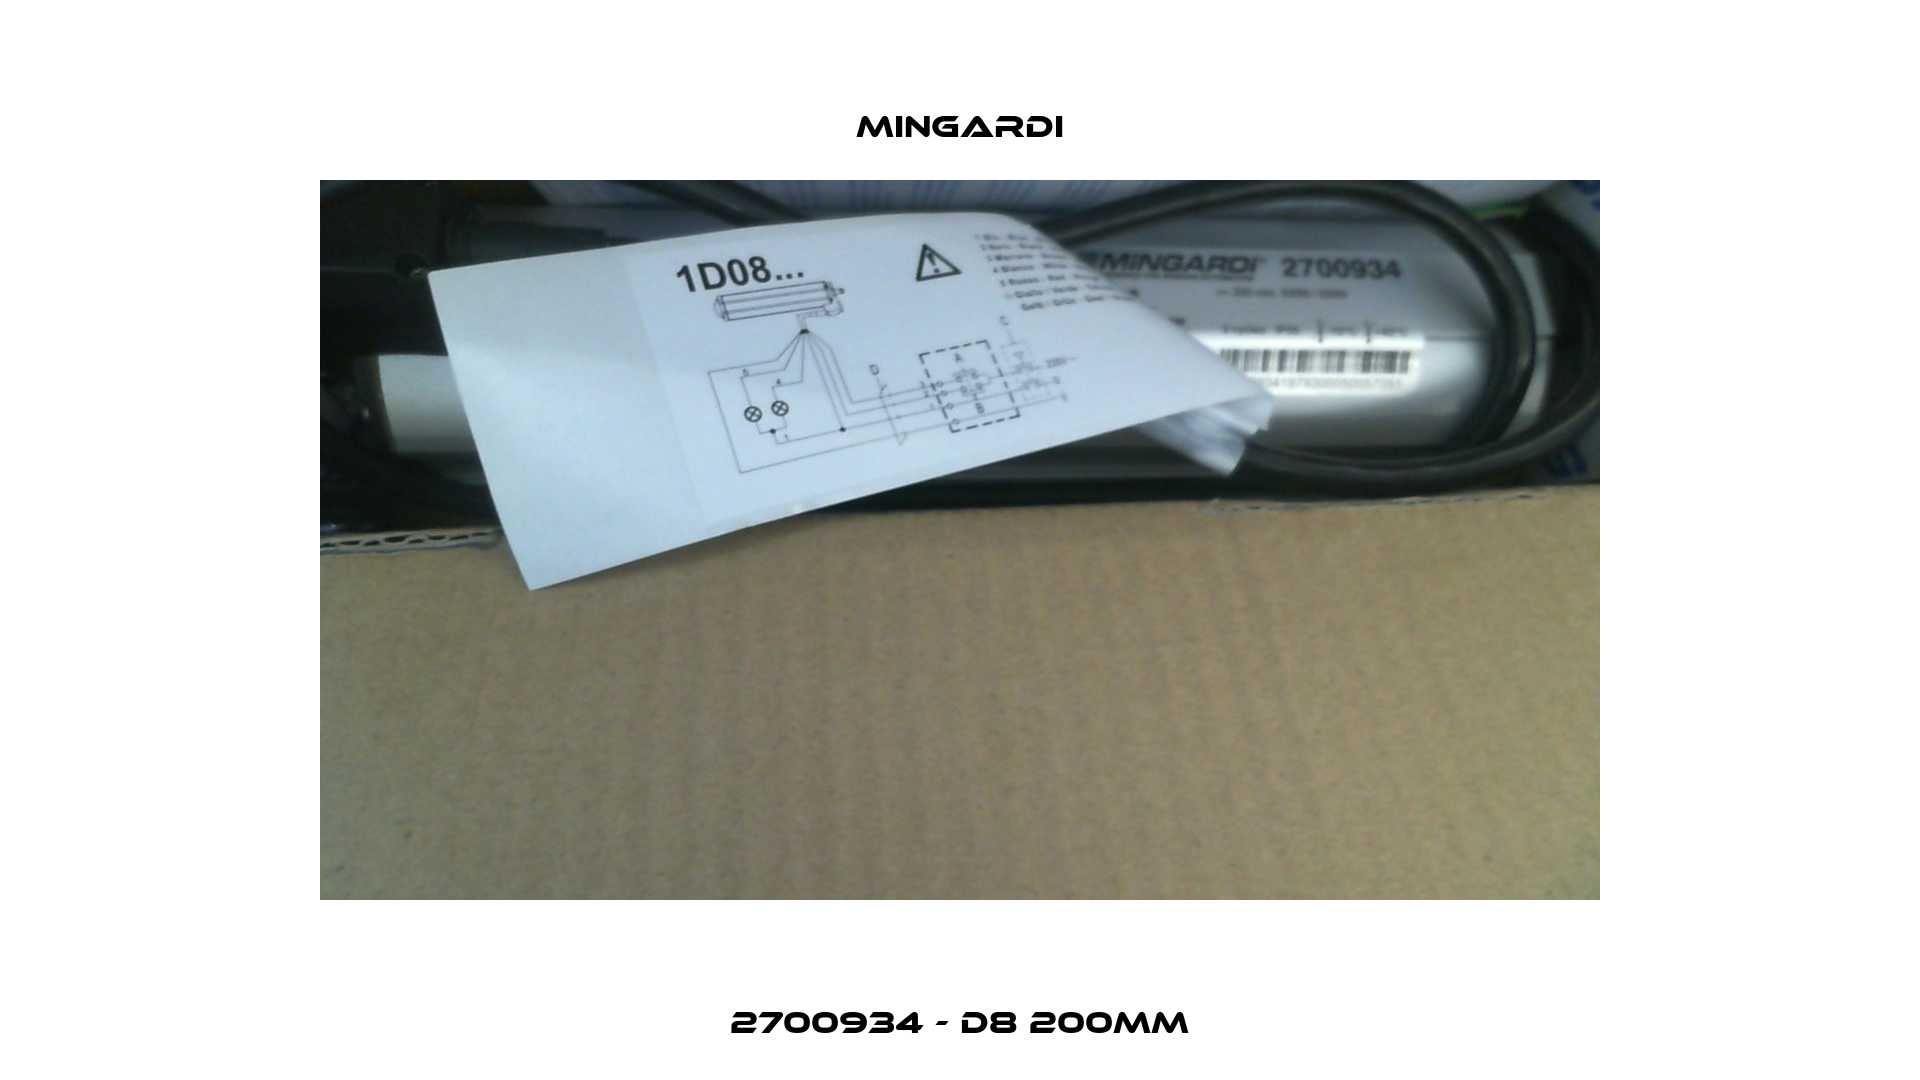 2700934 - D8 200mm Mingardi